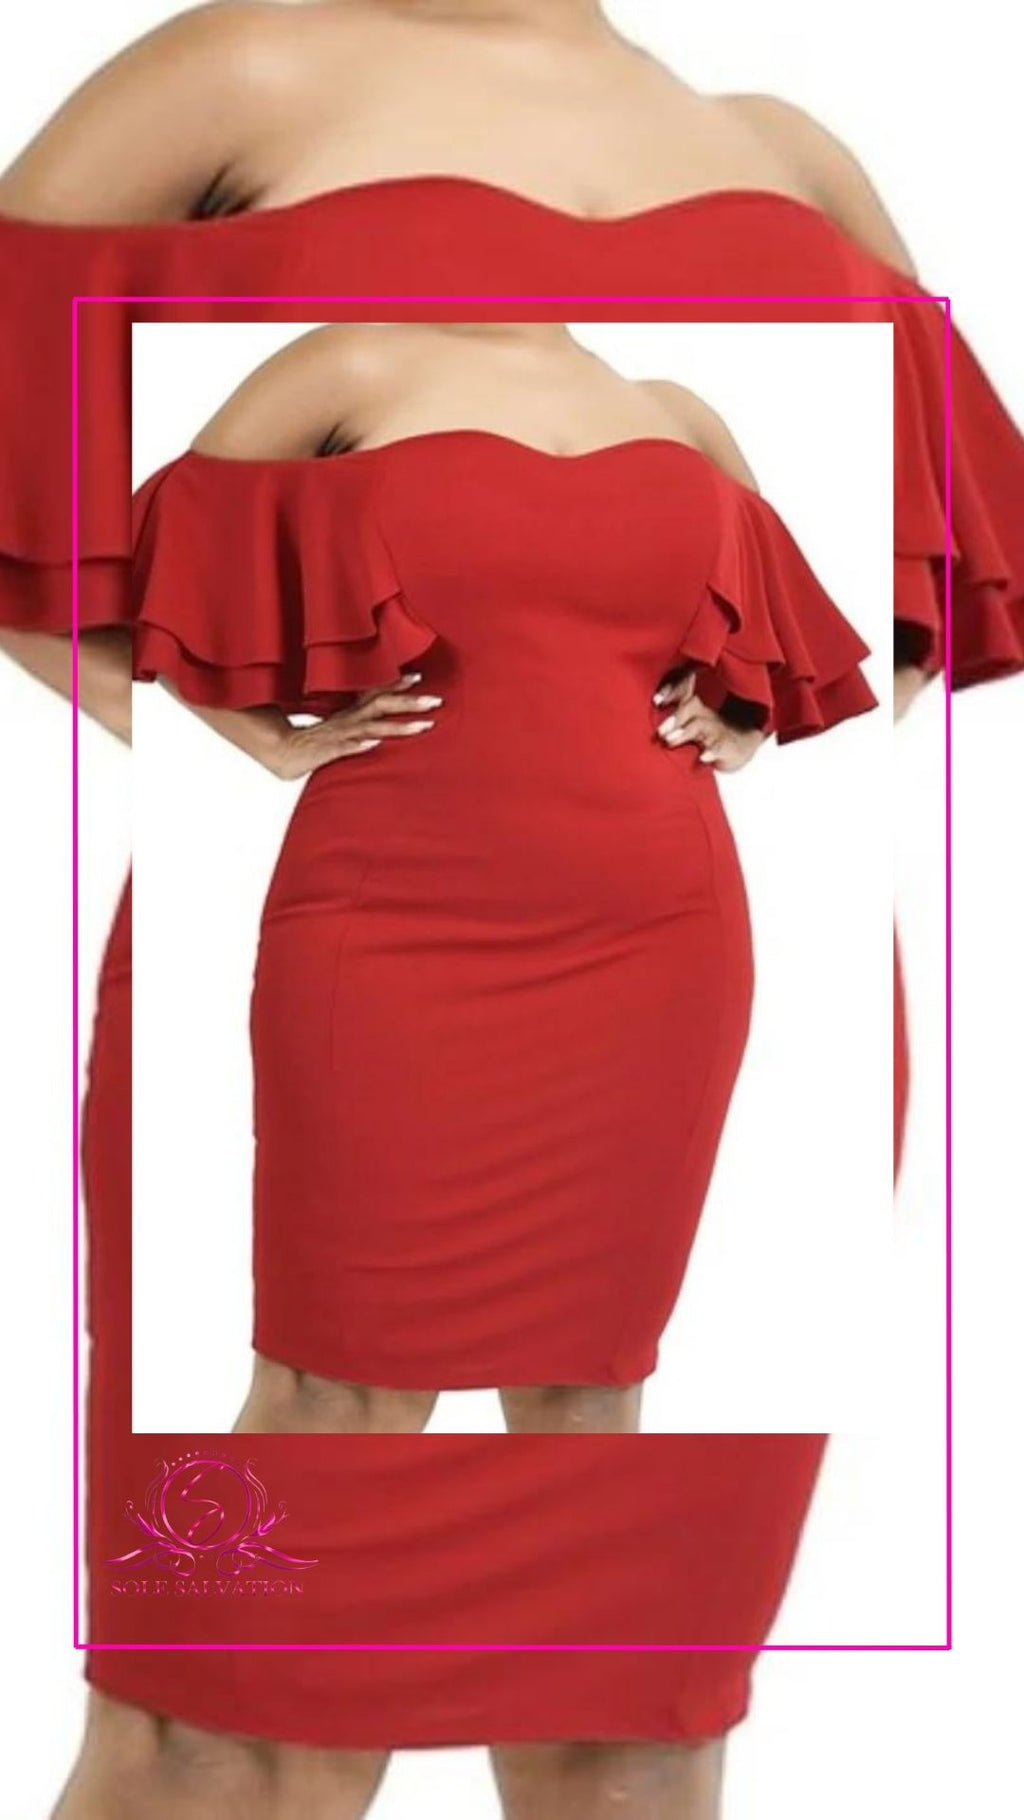 Red Off Shoulder Dress